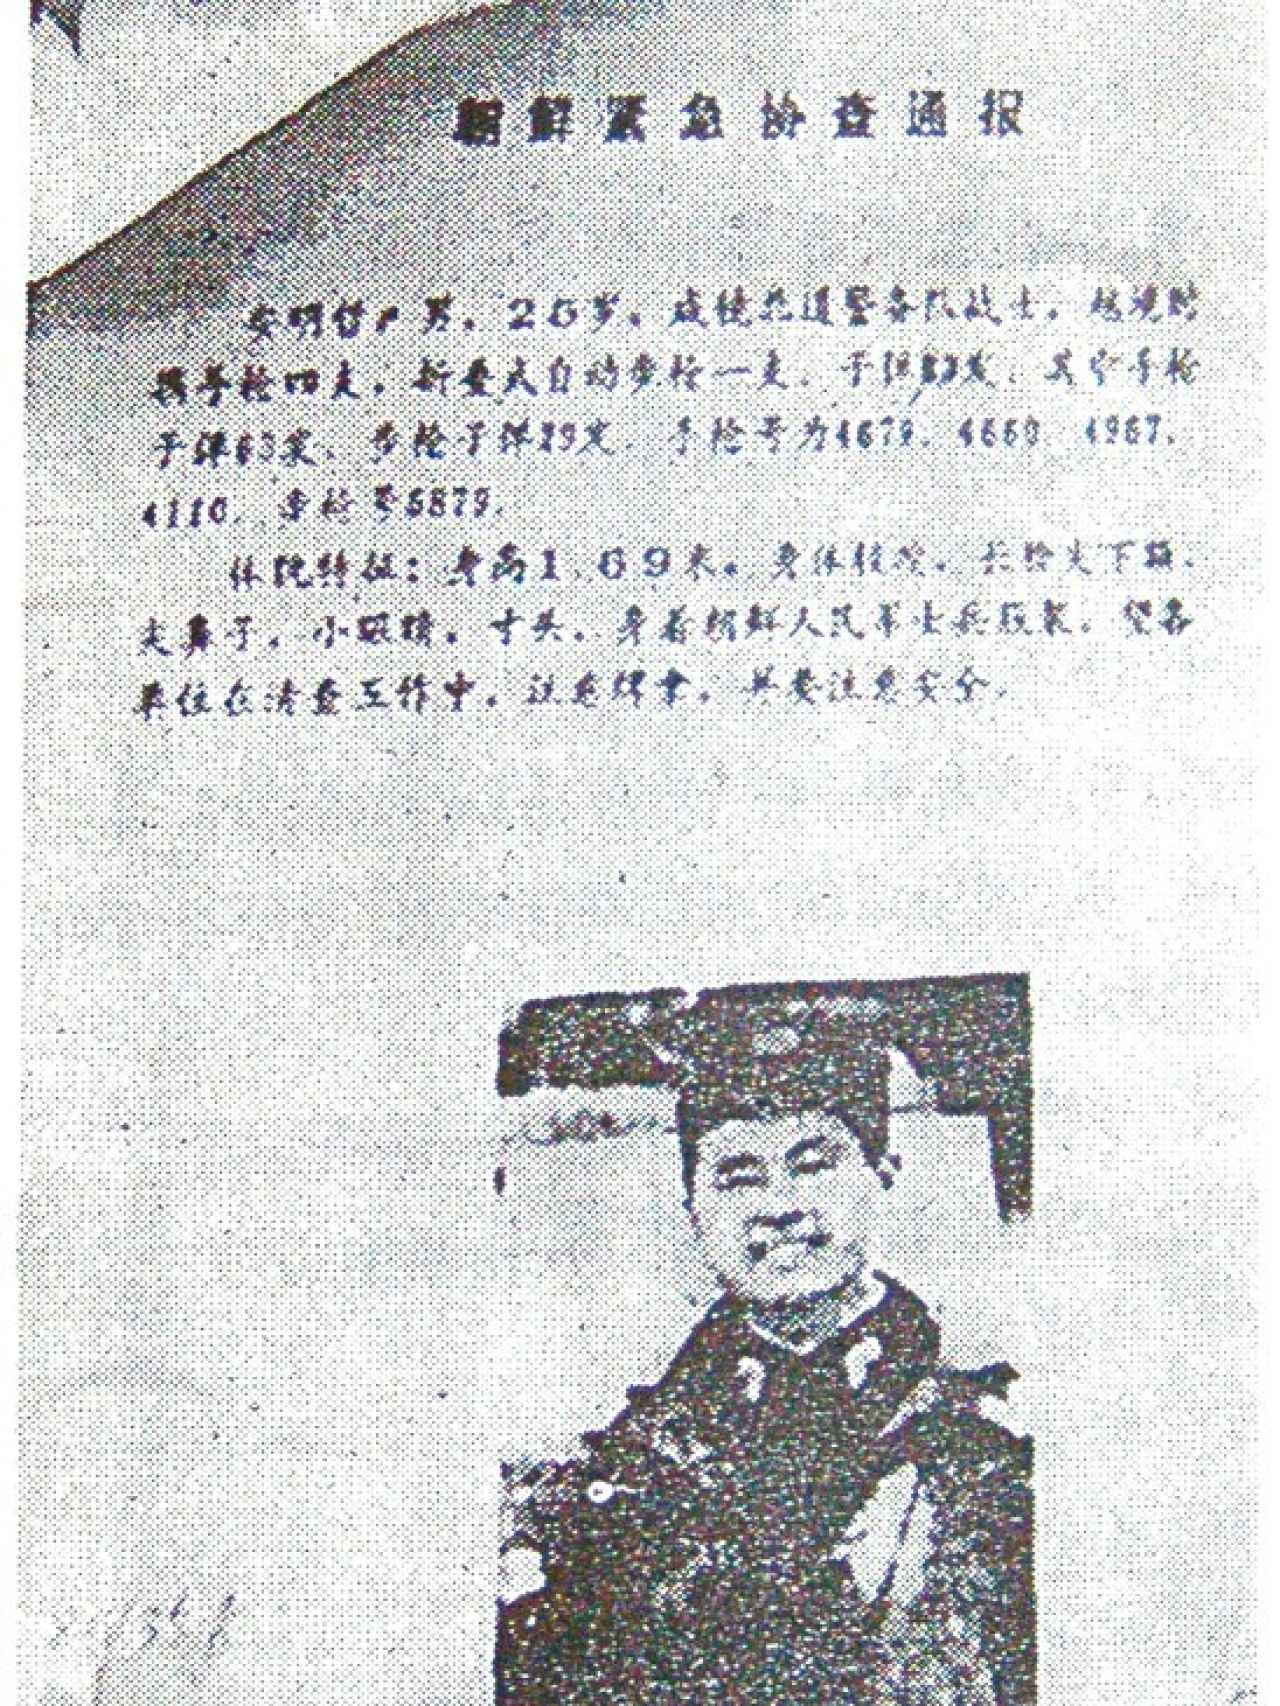 Documento de las autoridades chinas de 1994 en donde se indica que Ahn está en busca y captura.